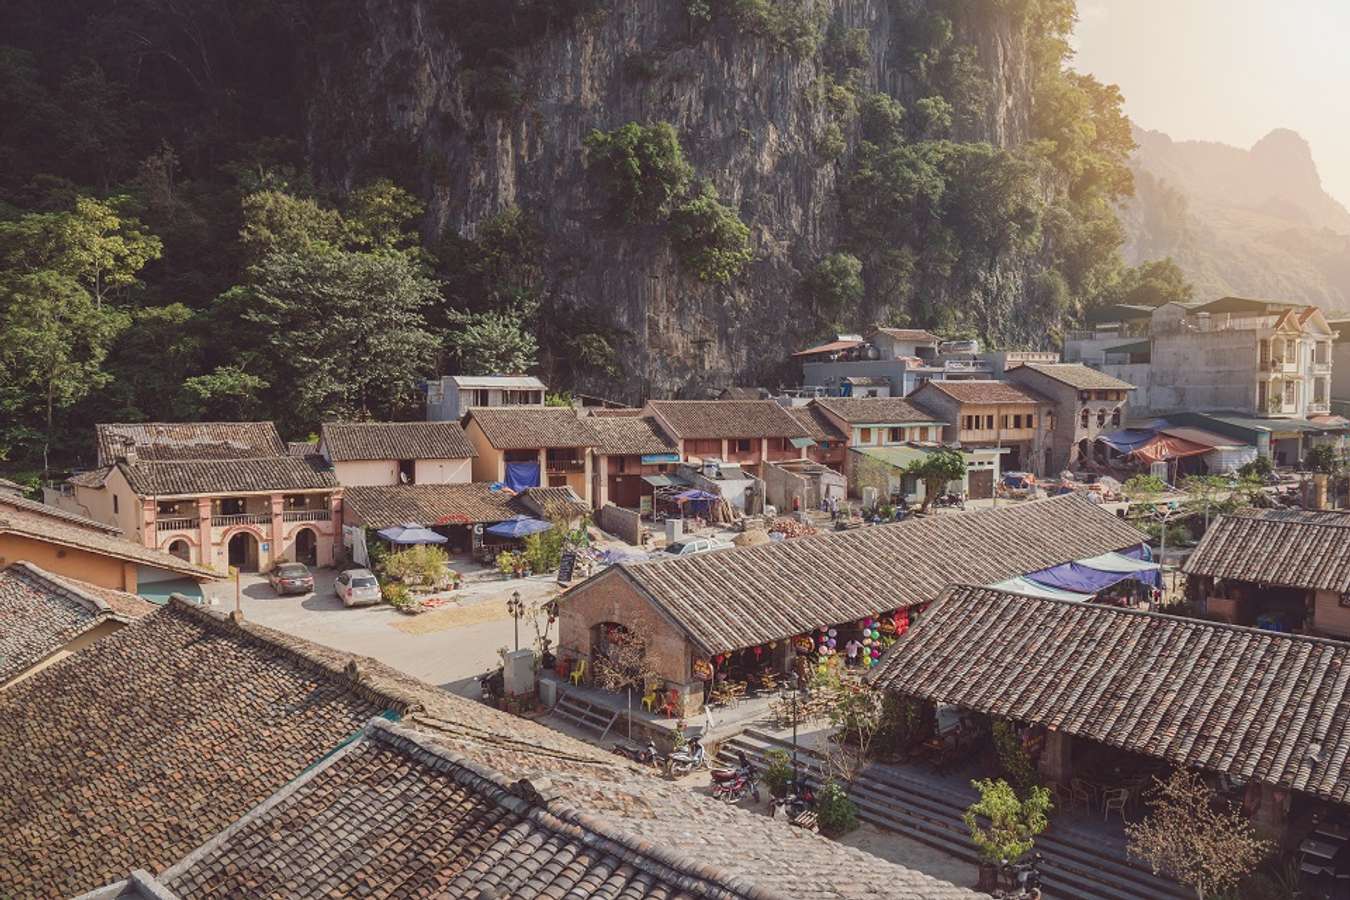 Phố cổ Đồng Văn là một ngôi làng cổ nằm ép mình dưới những vách đá.